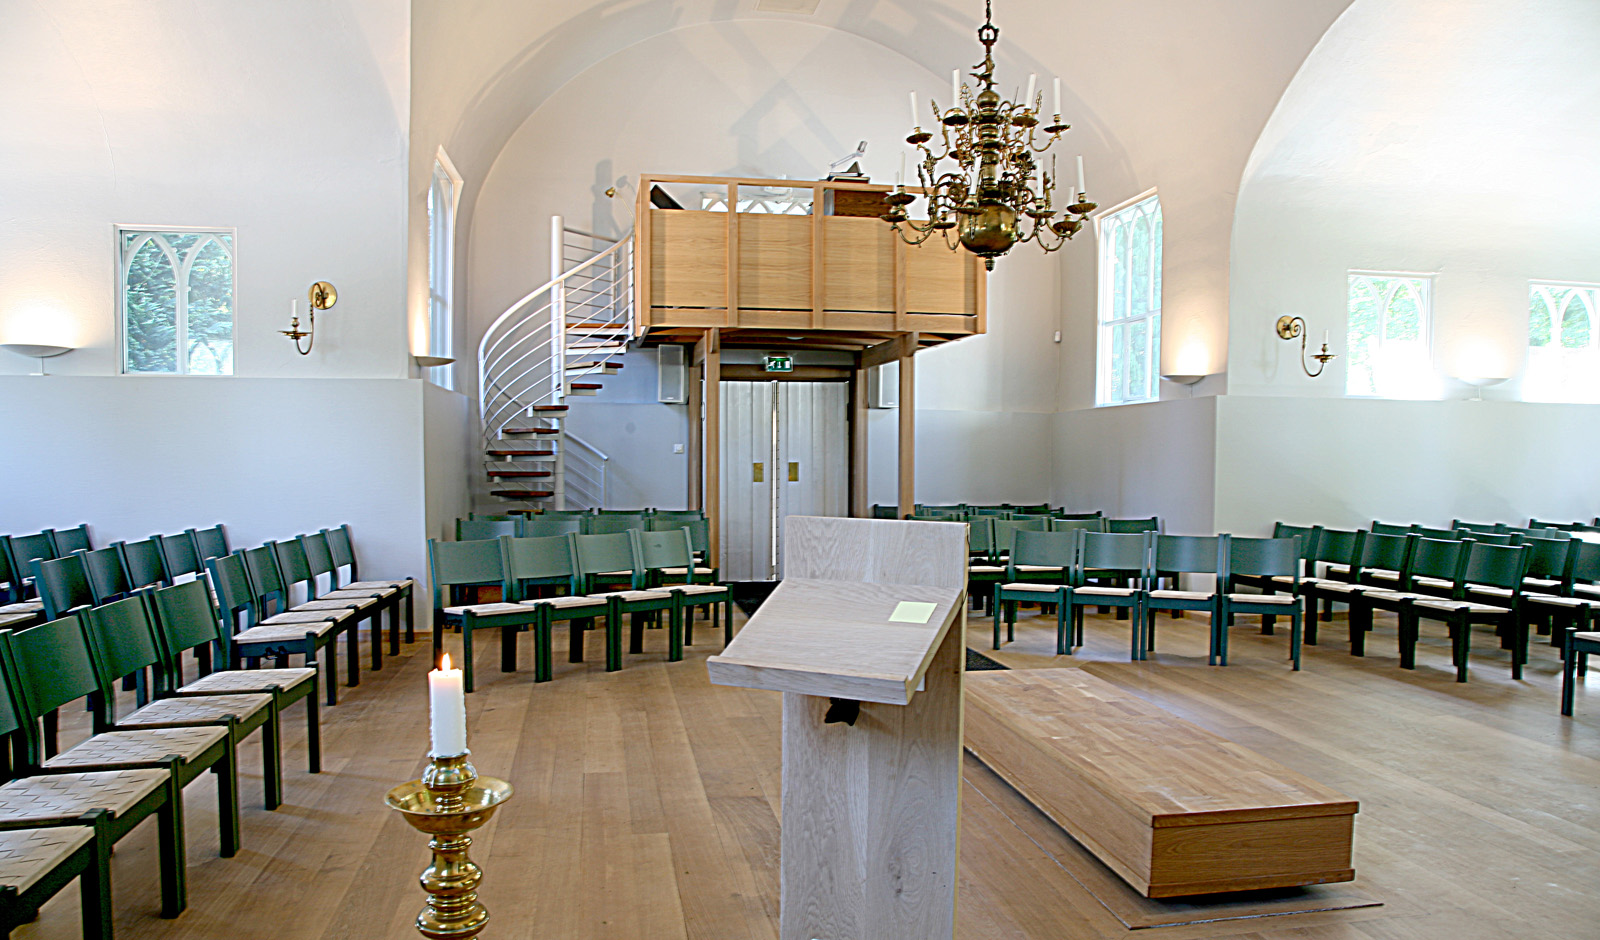 Kristiansand kapell og kirkegård